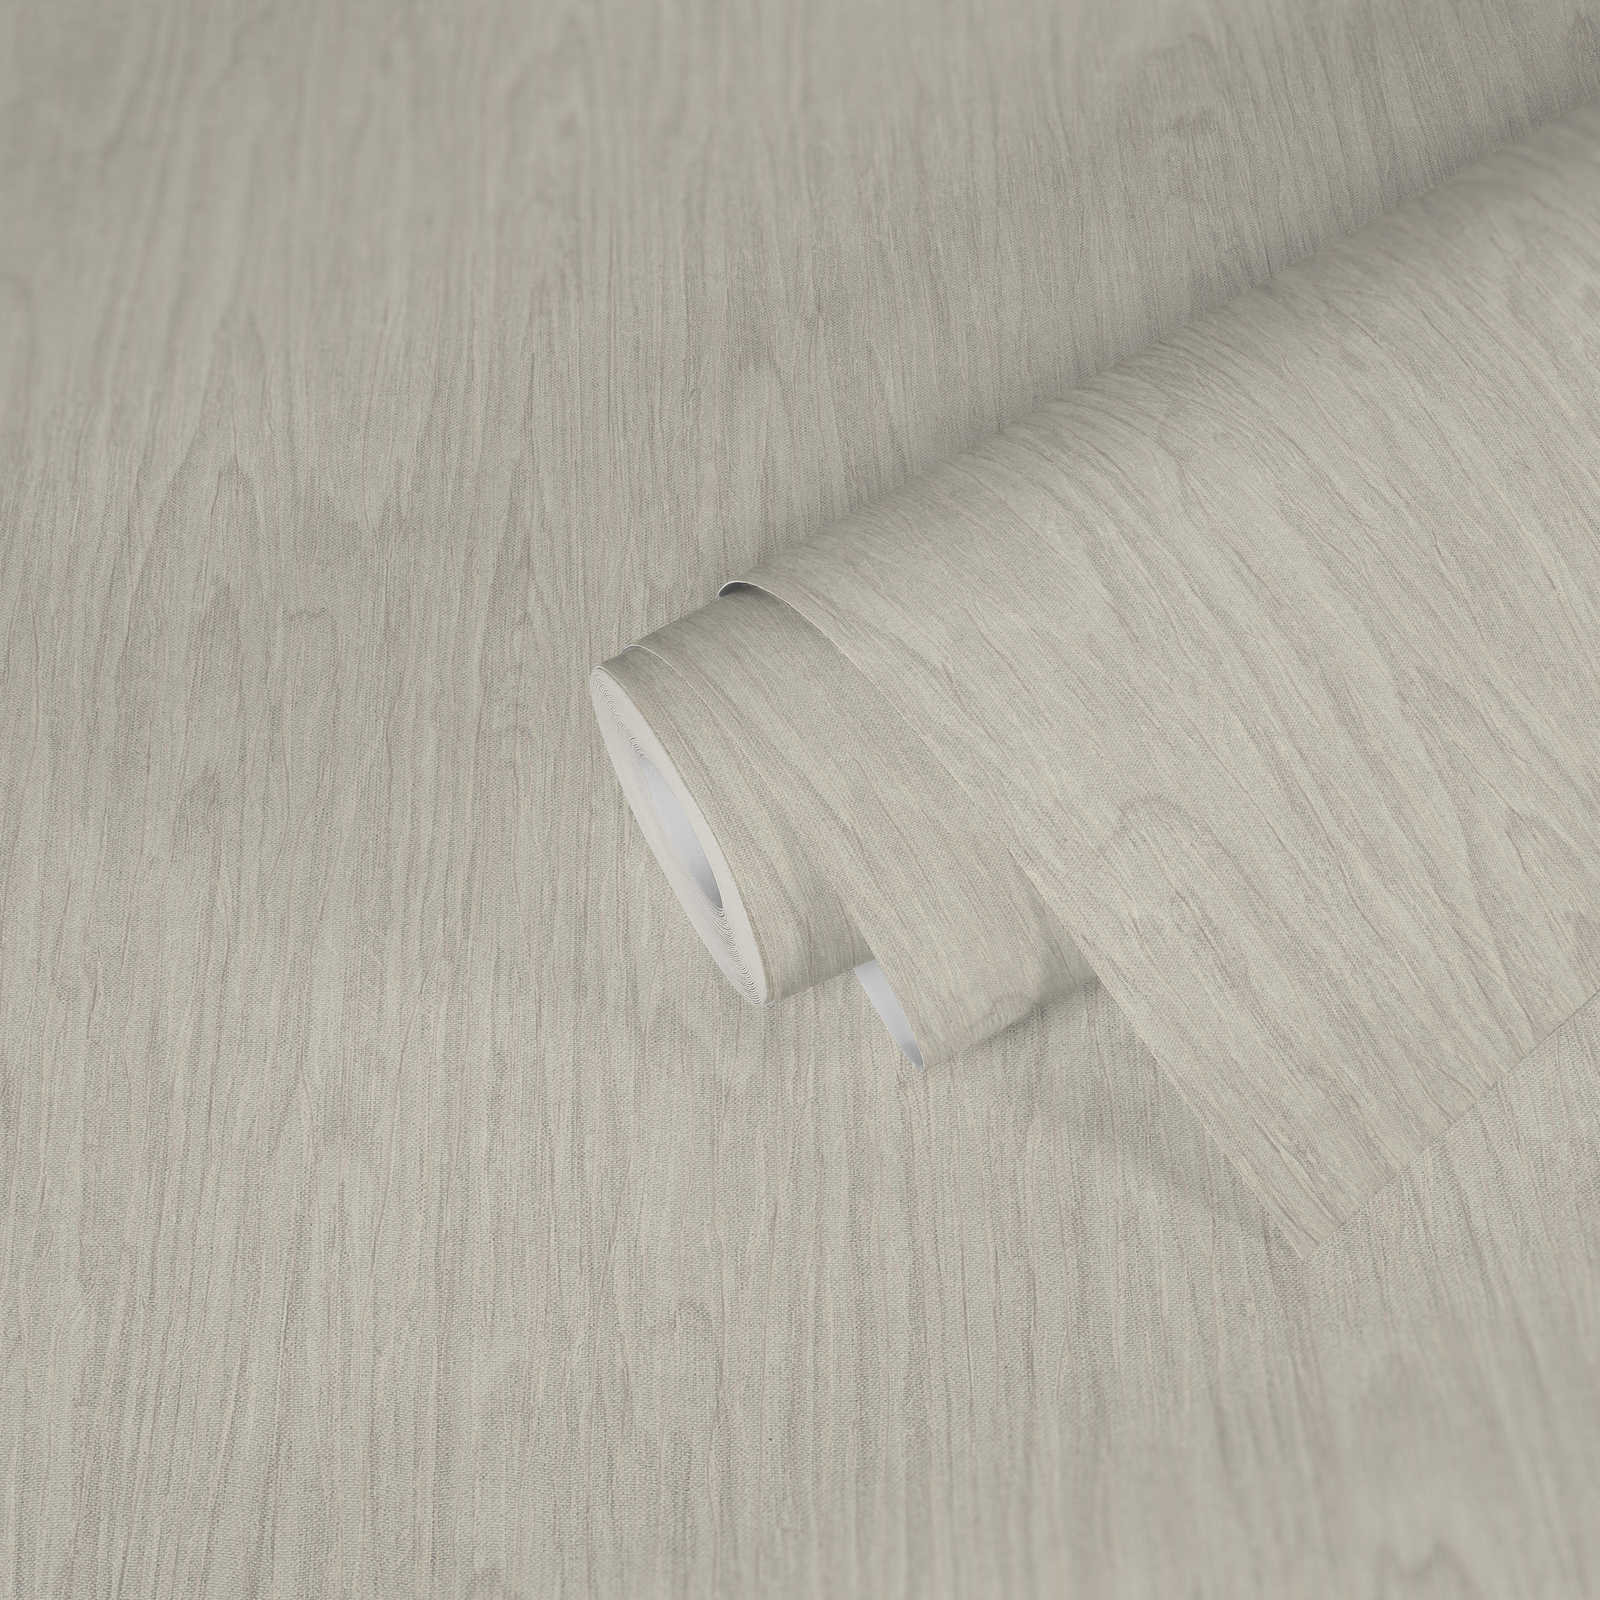             VERSACE Home behang realistische houtlook - beige, crème, wit
        